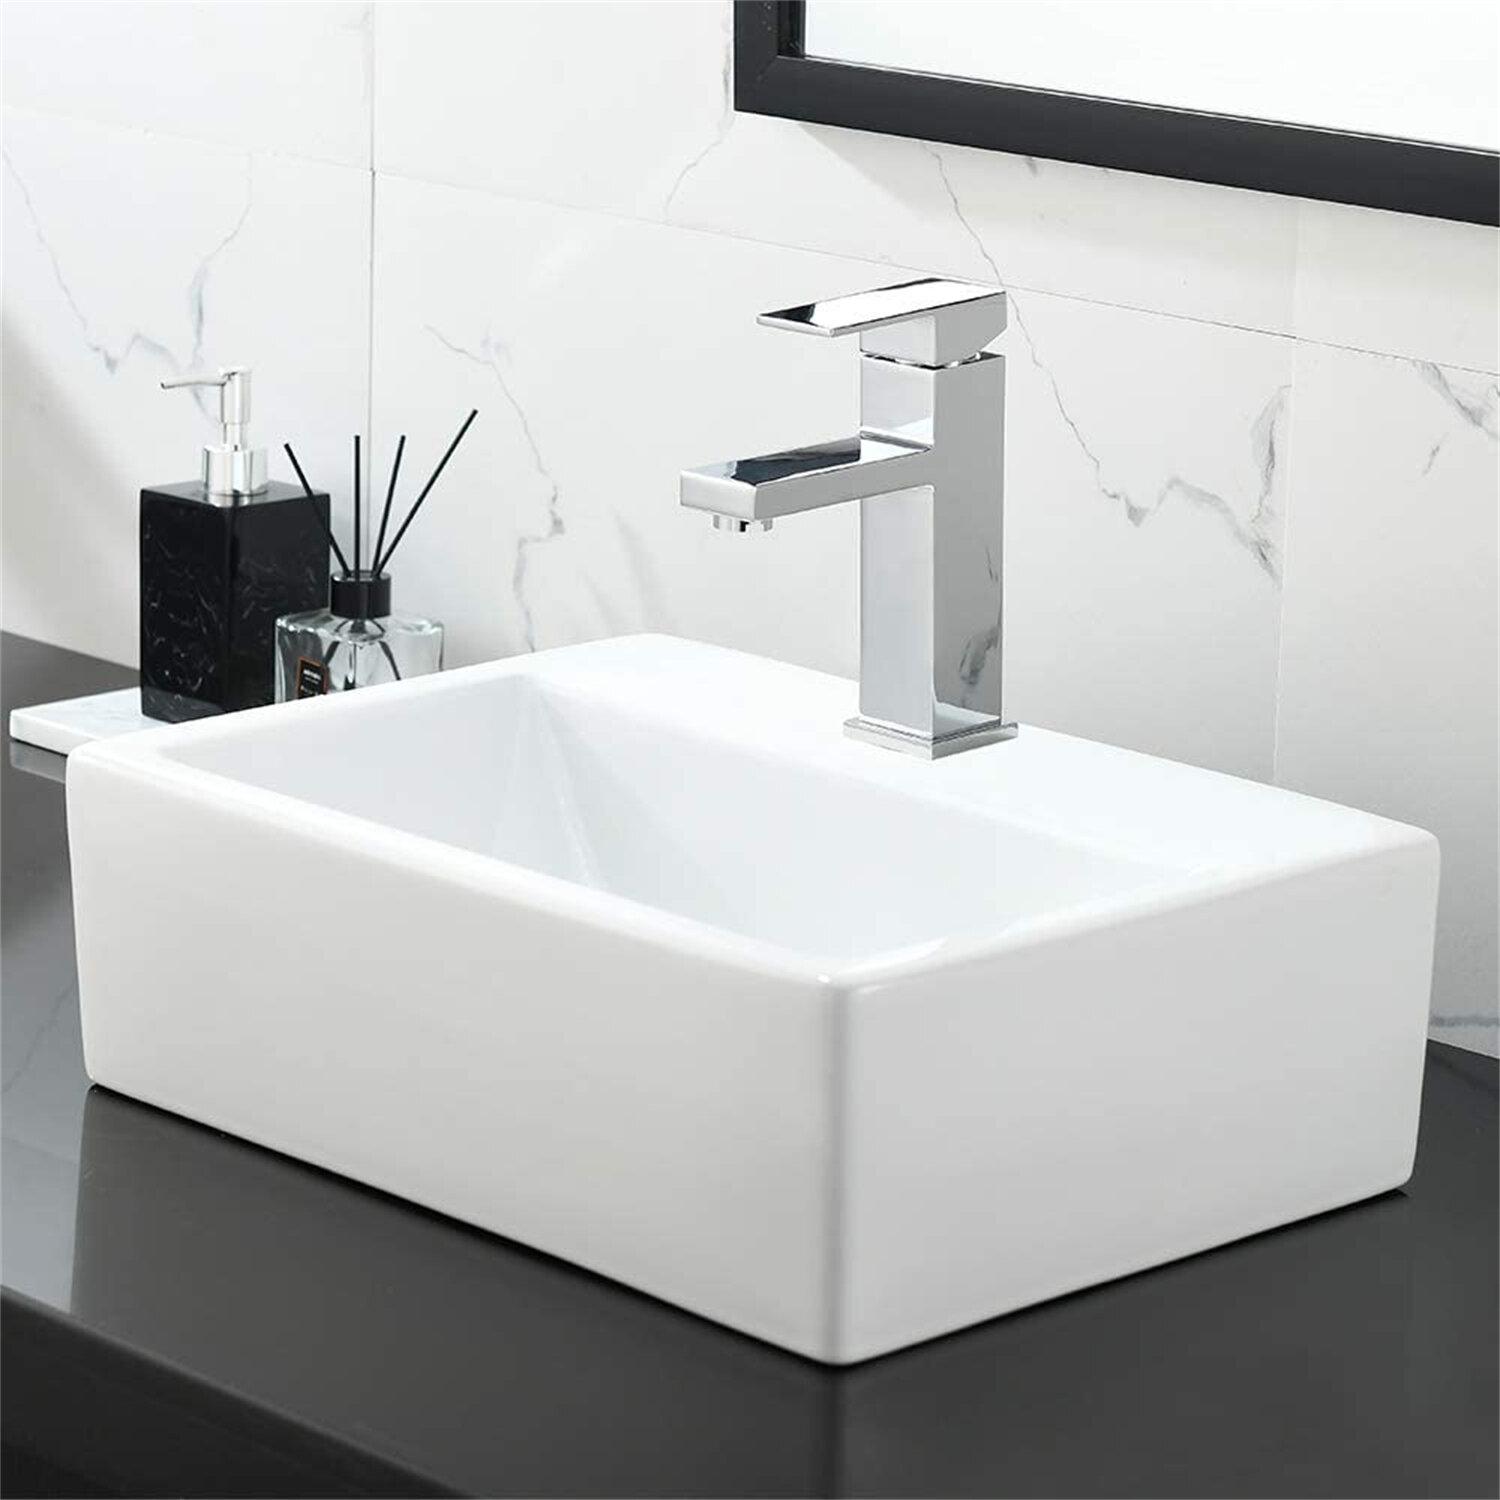 Bathroom Porcelain Ceramic Vessel Sink Vanity Basin Bowl Pop-up Drain Set 